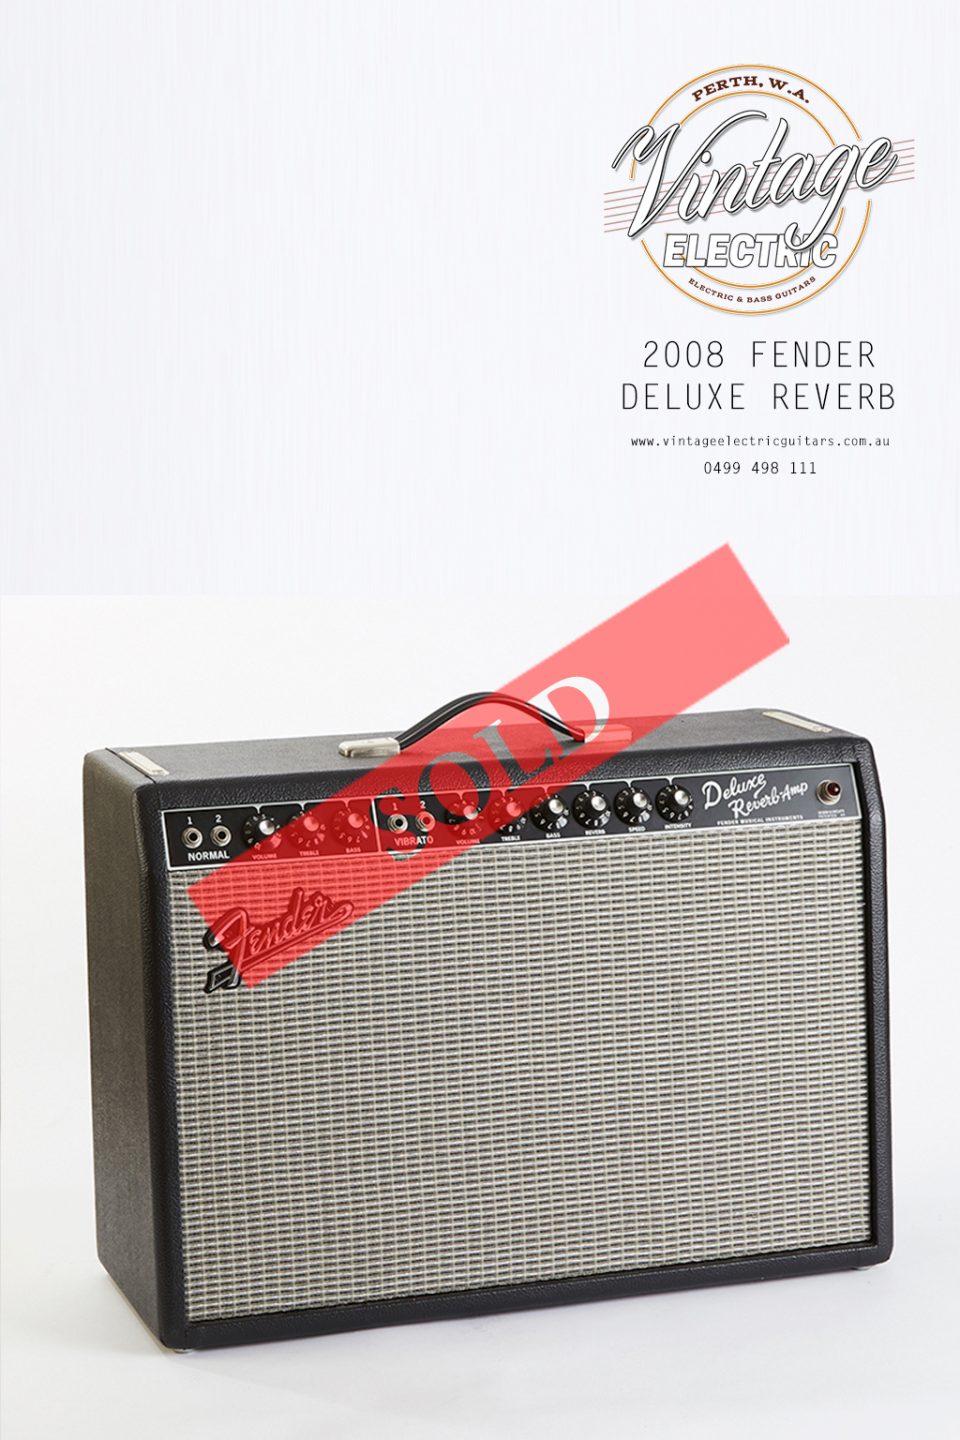 2008 Fender Deluxe Reverb